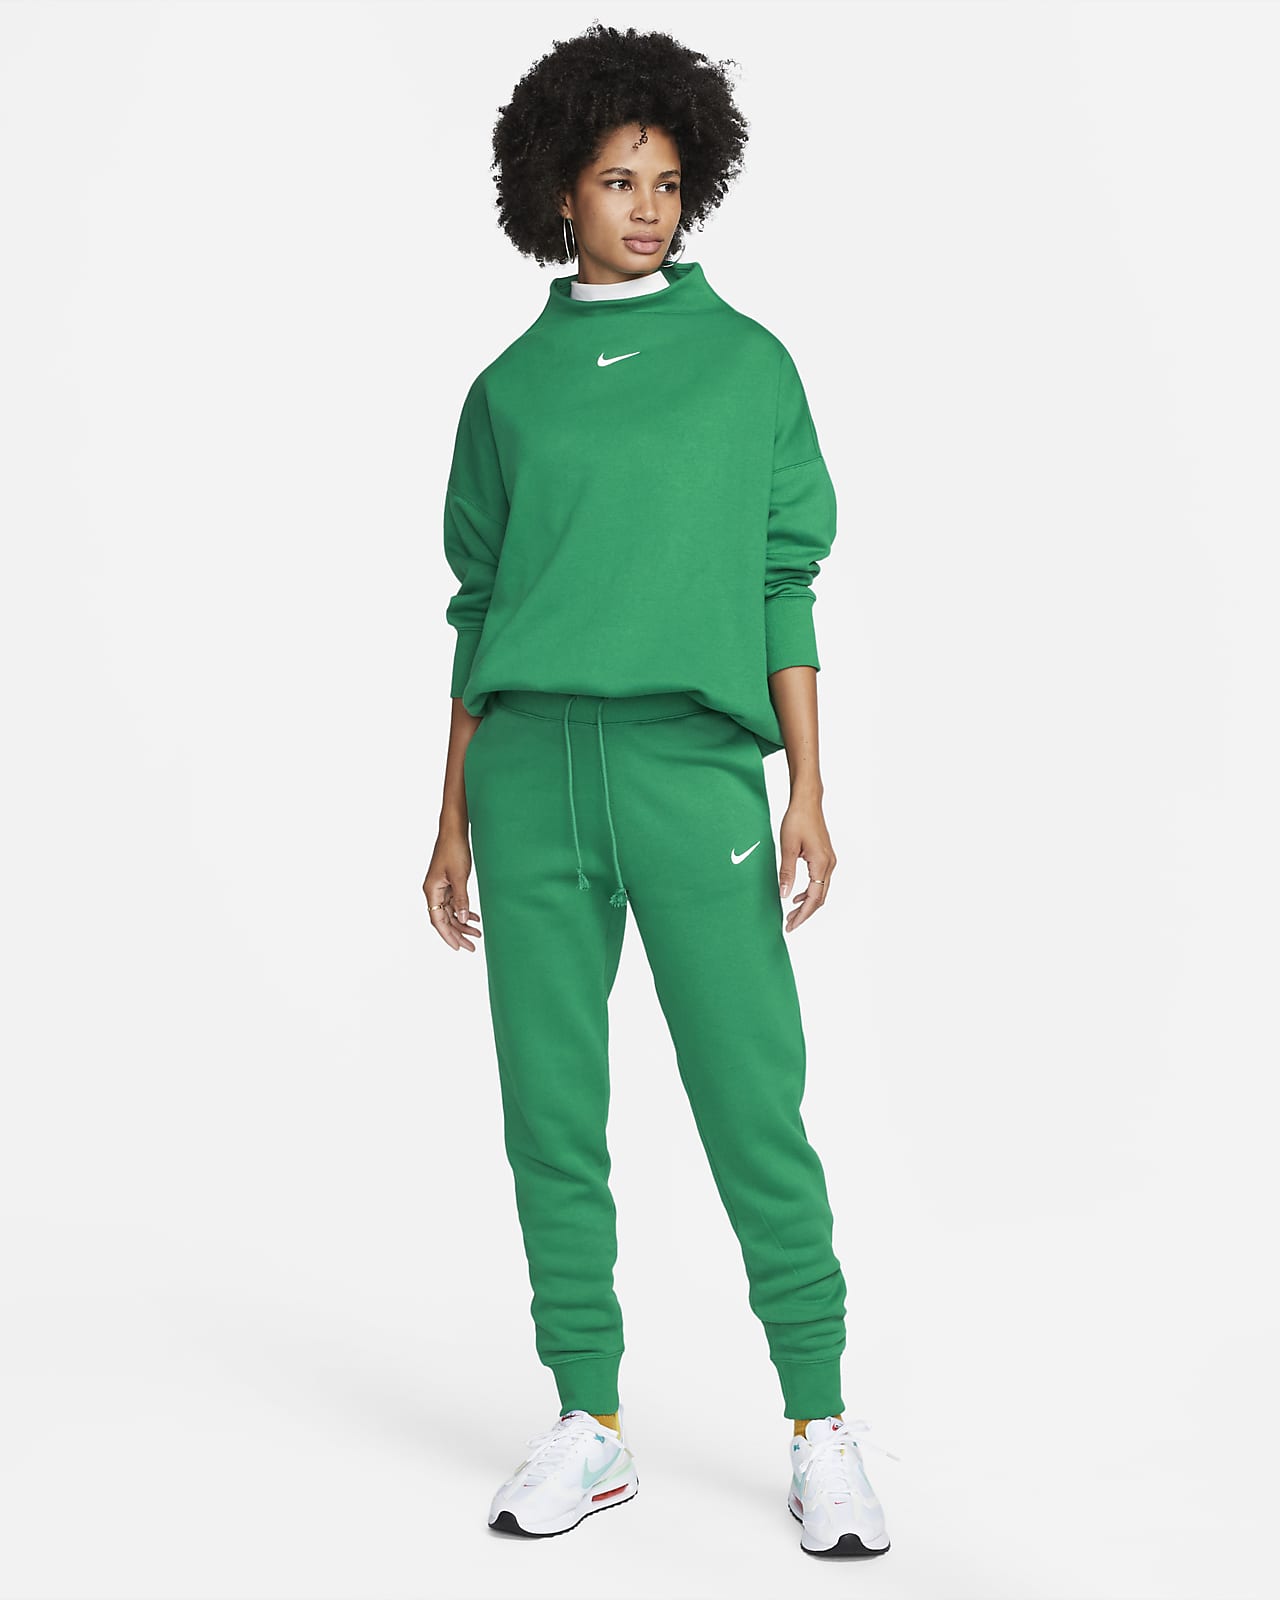 Jogging large taille haute femme Nike Phoenix Fleece - Nike - Marques -  Textile